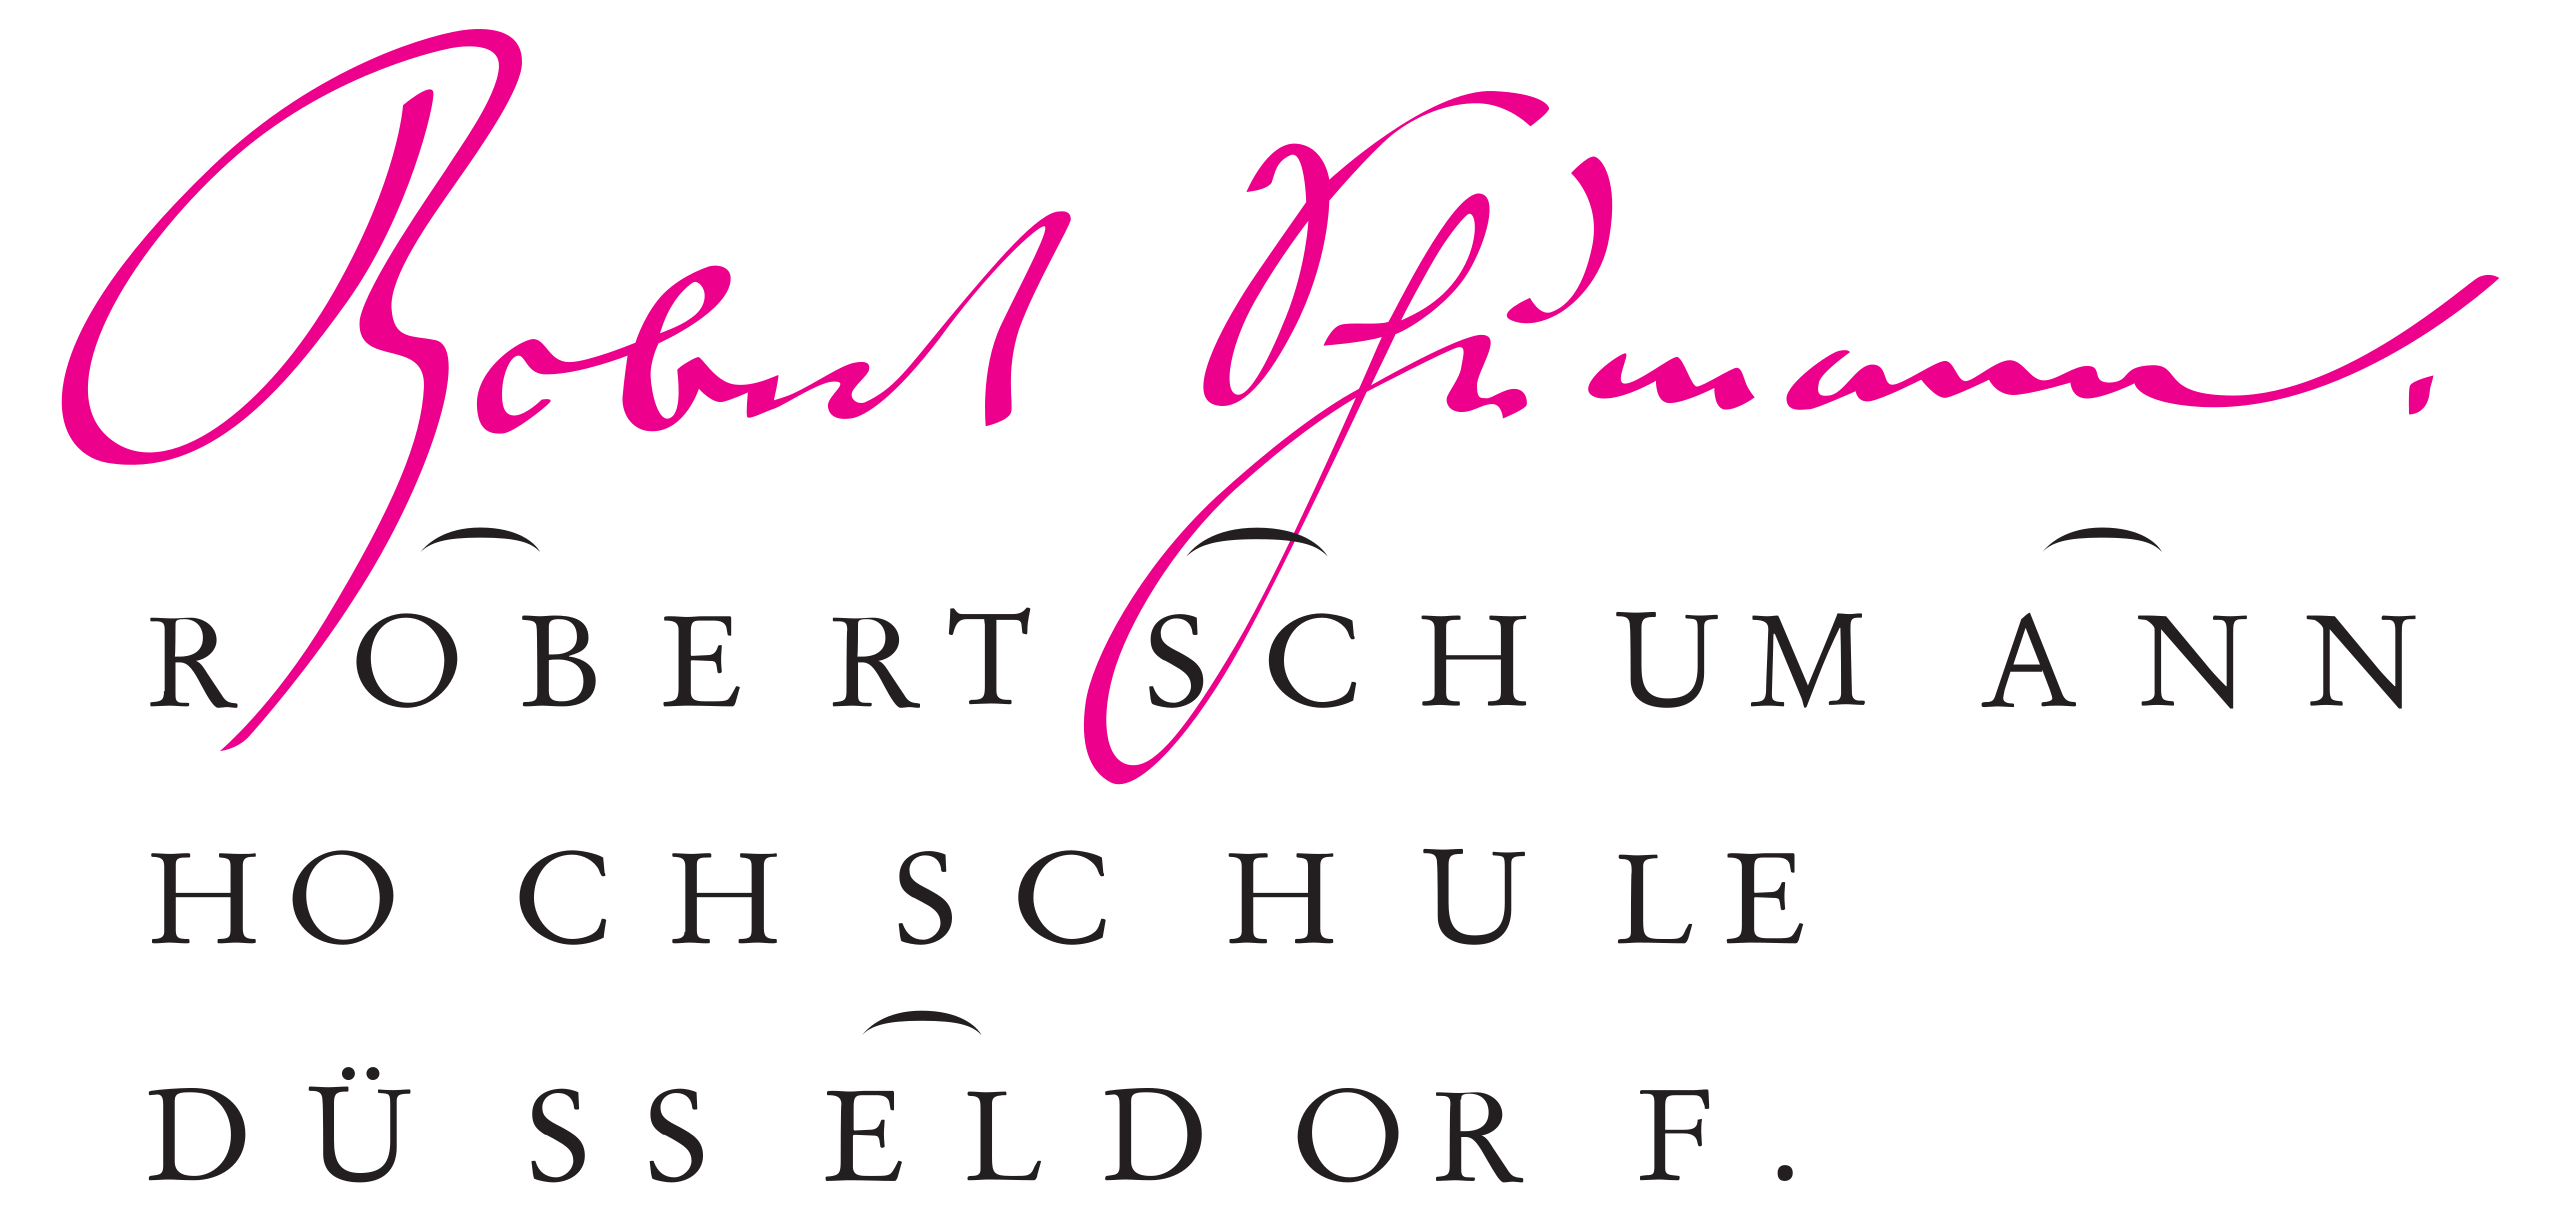 Robert Schumann Hochschule Germany